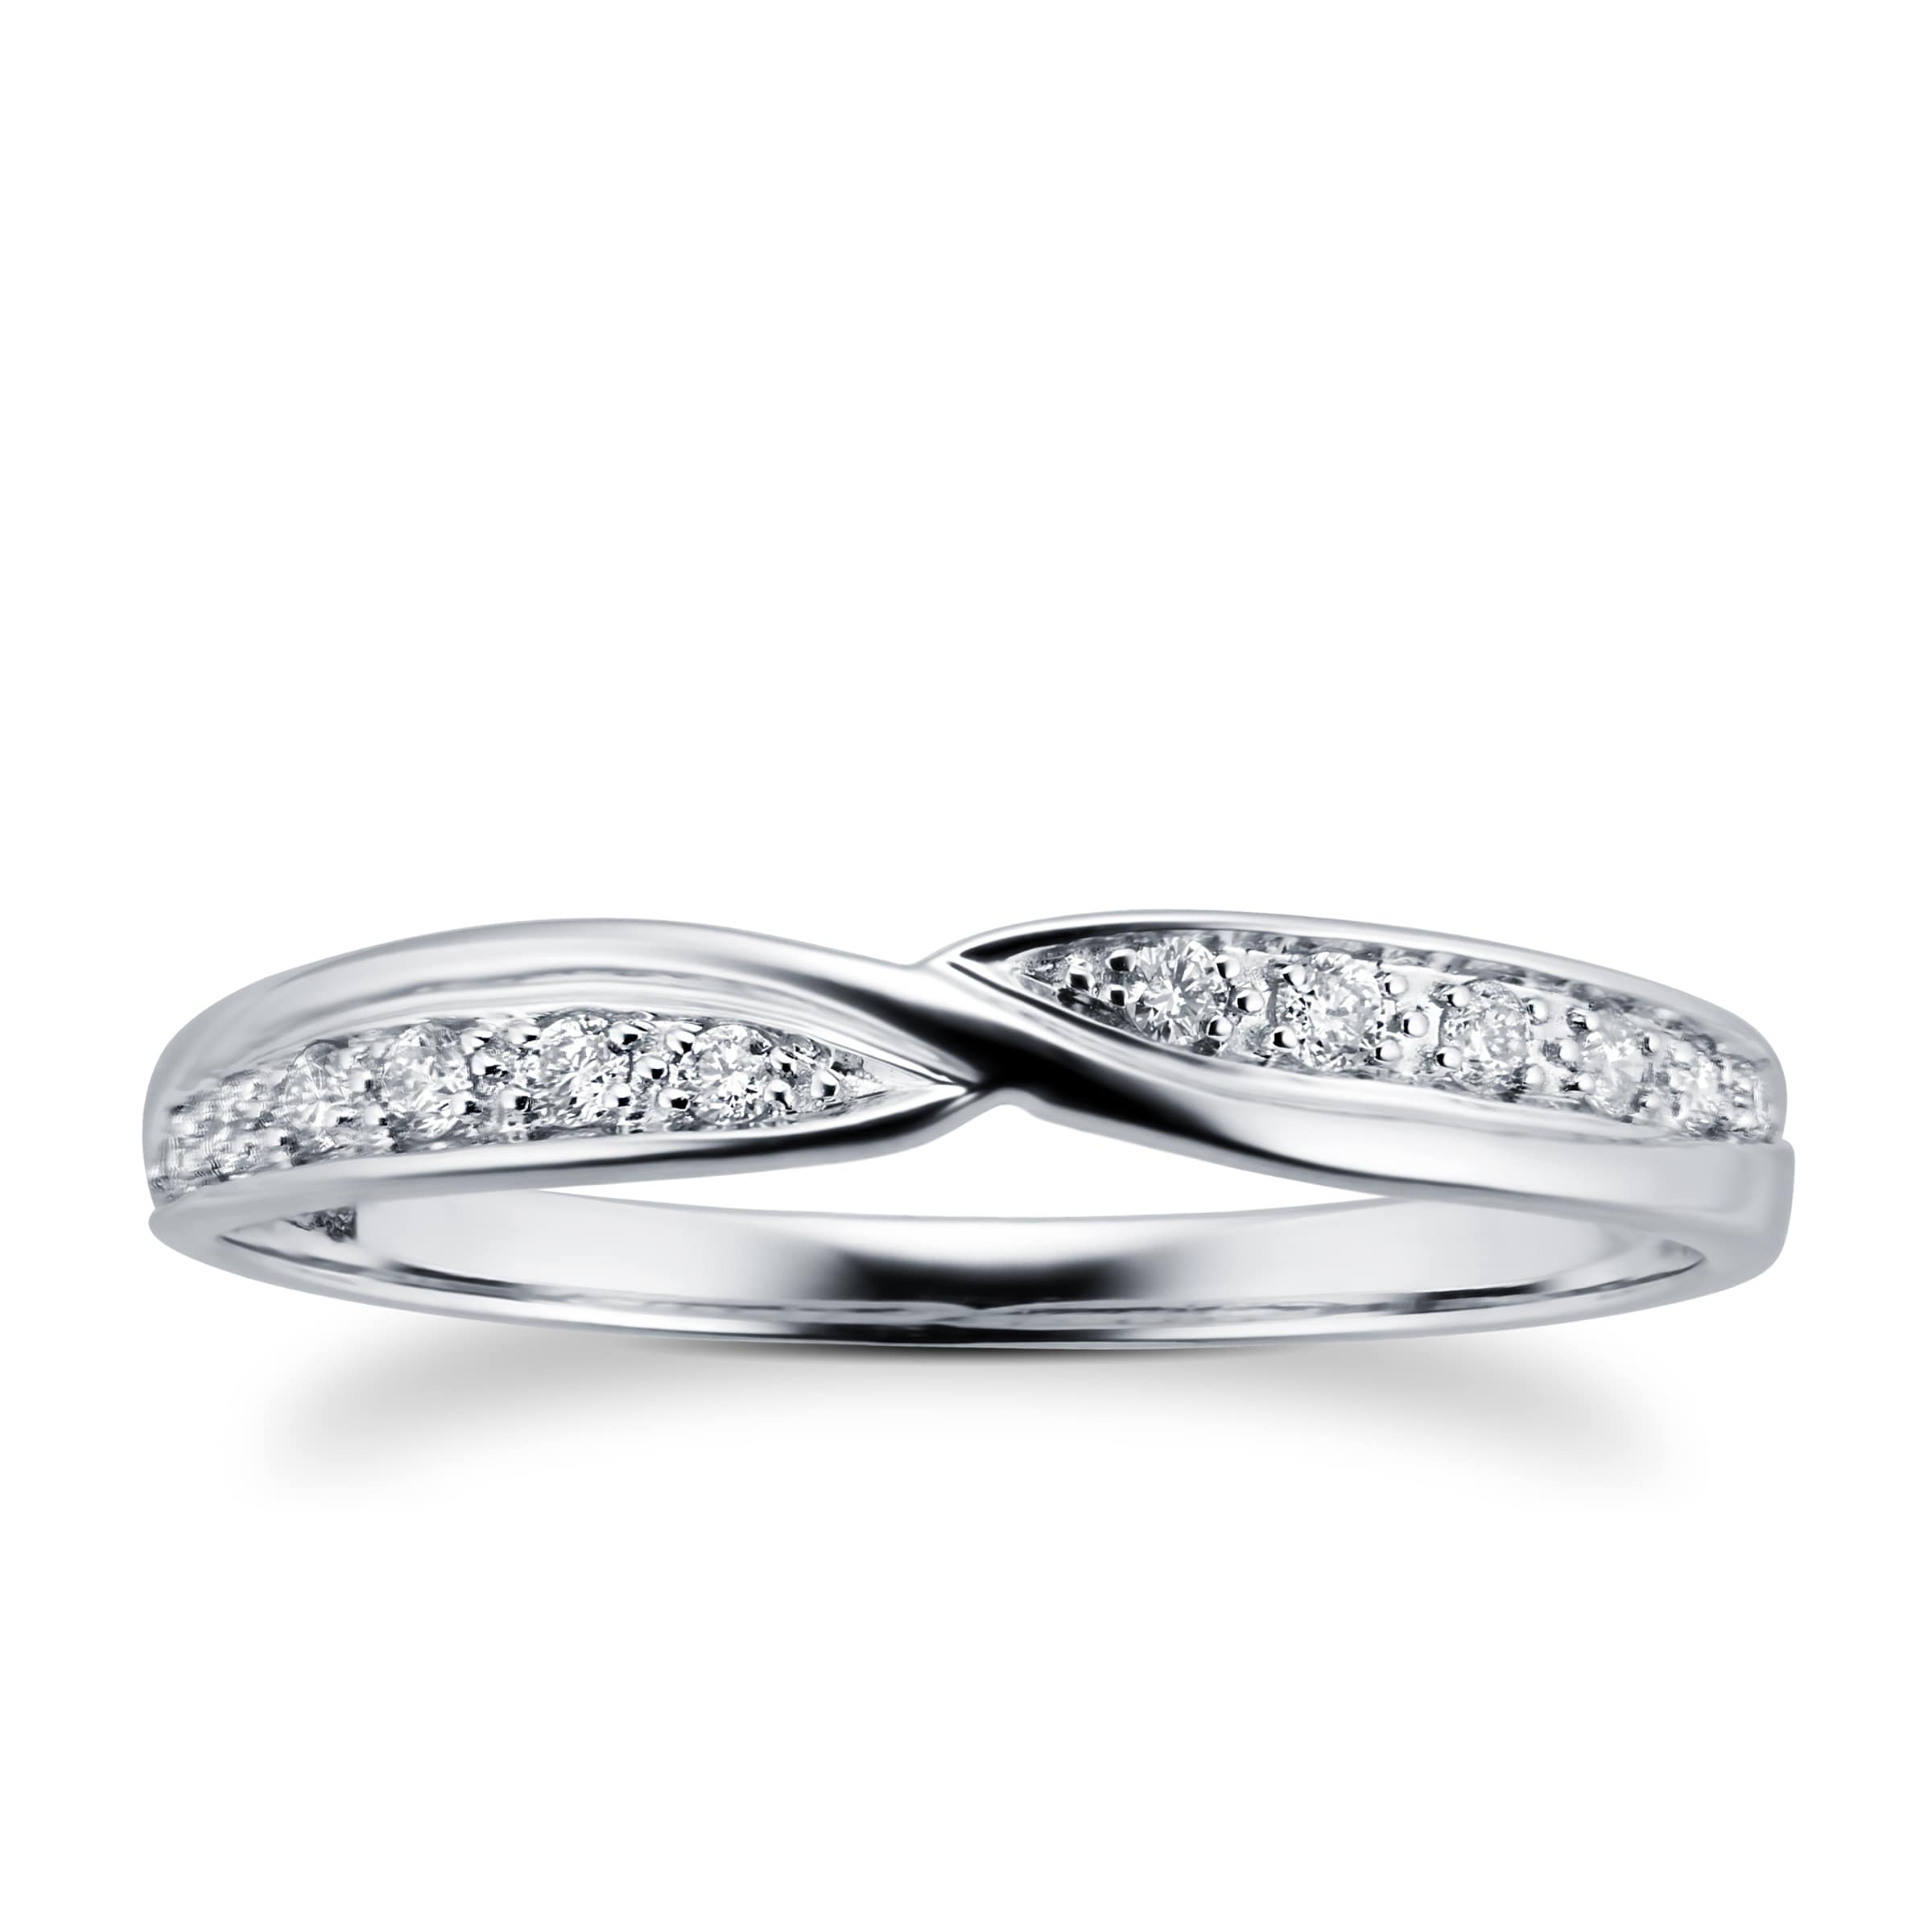 Ladies 0.09 Total Carat Weight Diamond Set Kiss Wedding Ring In 9 Carat White Gold - Ring Size P